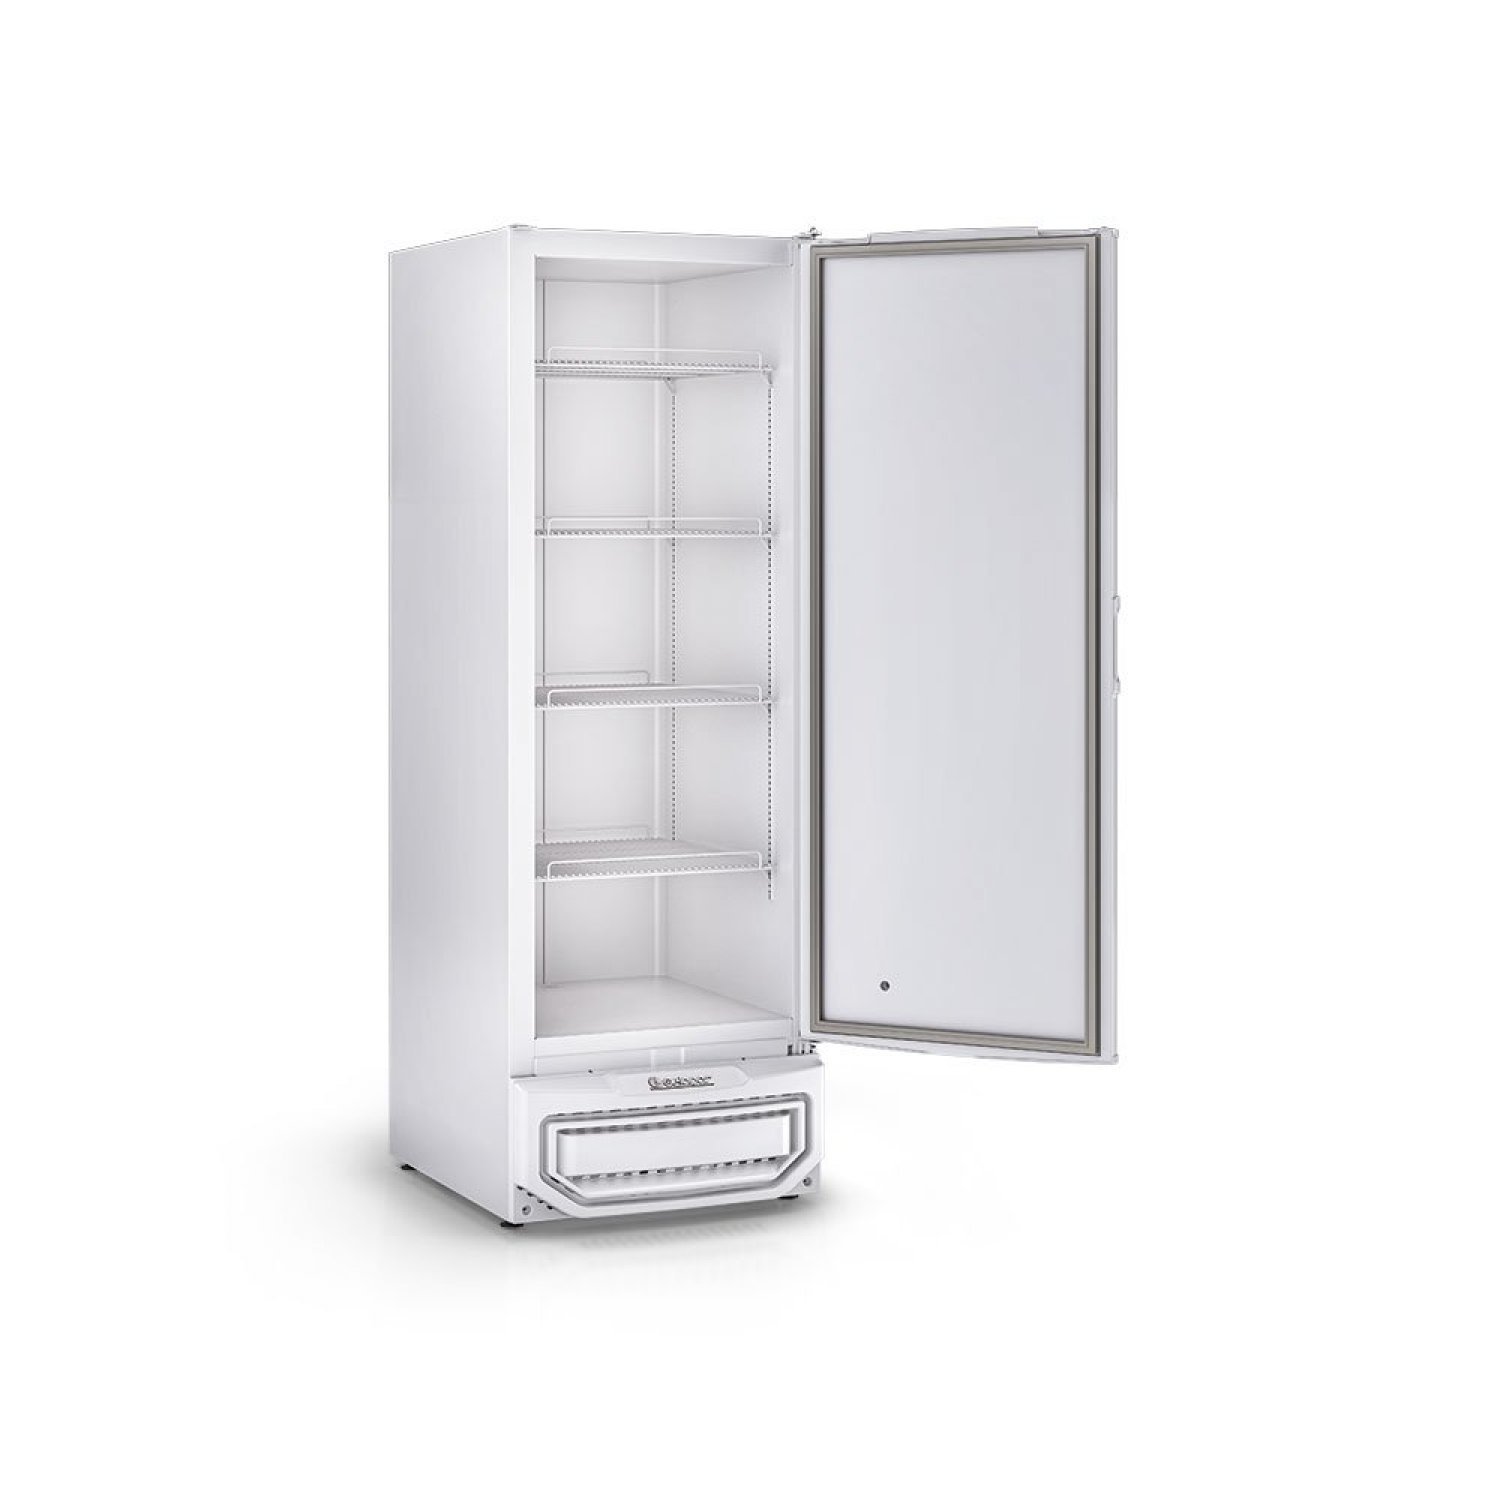 Freezer/Refrigerador Vertical 315 litros Porta Cega com Grades Tripla Ação GPC-31 BR Gelopar 220v - 3